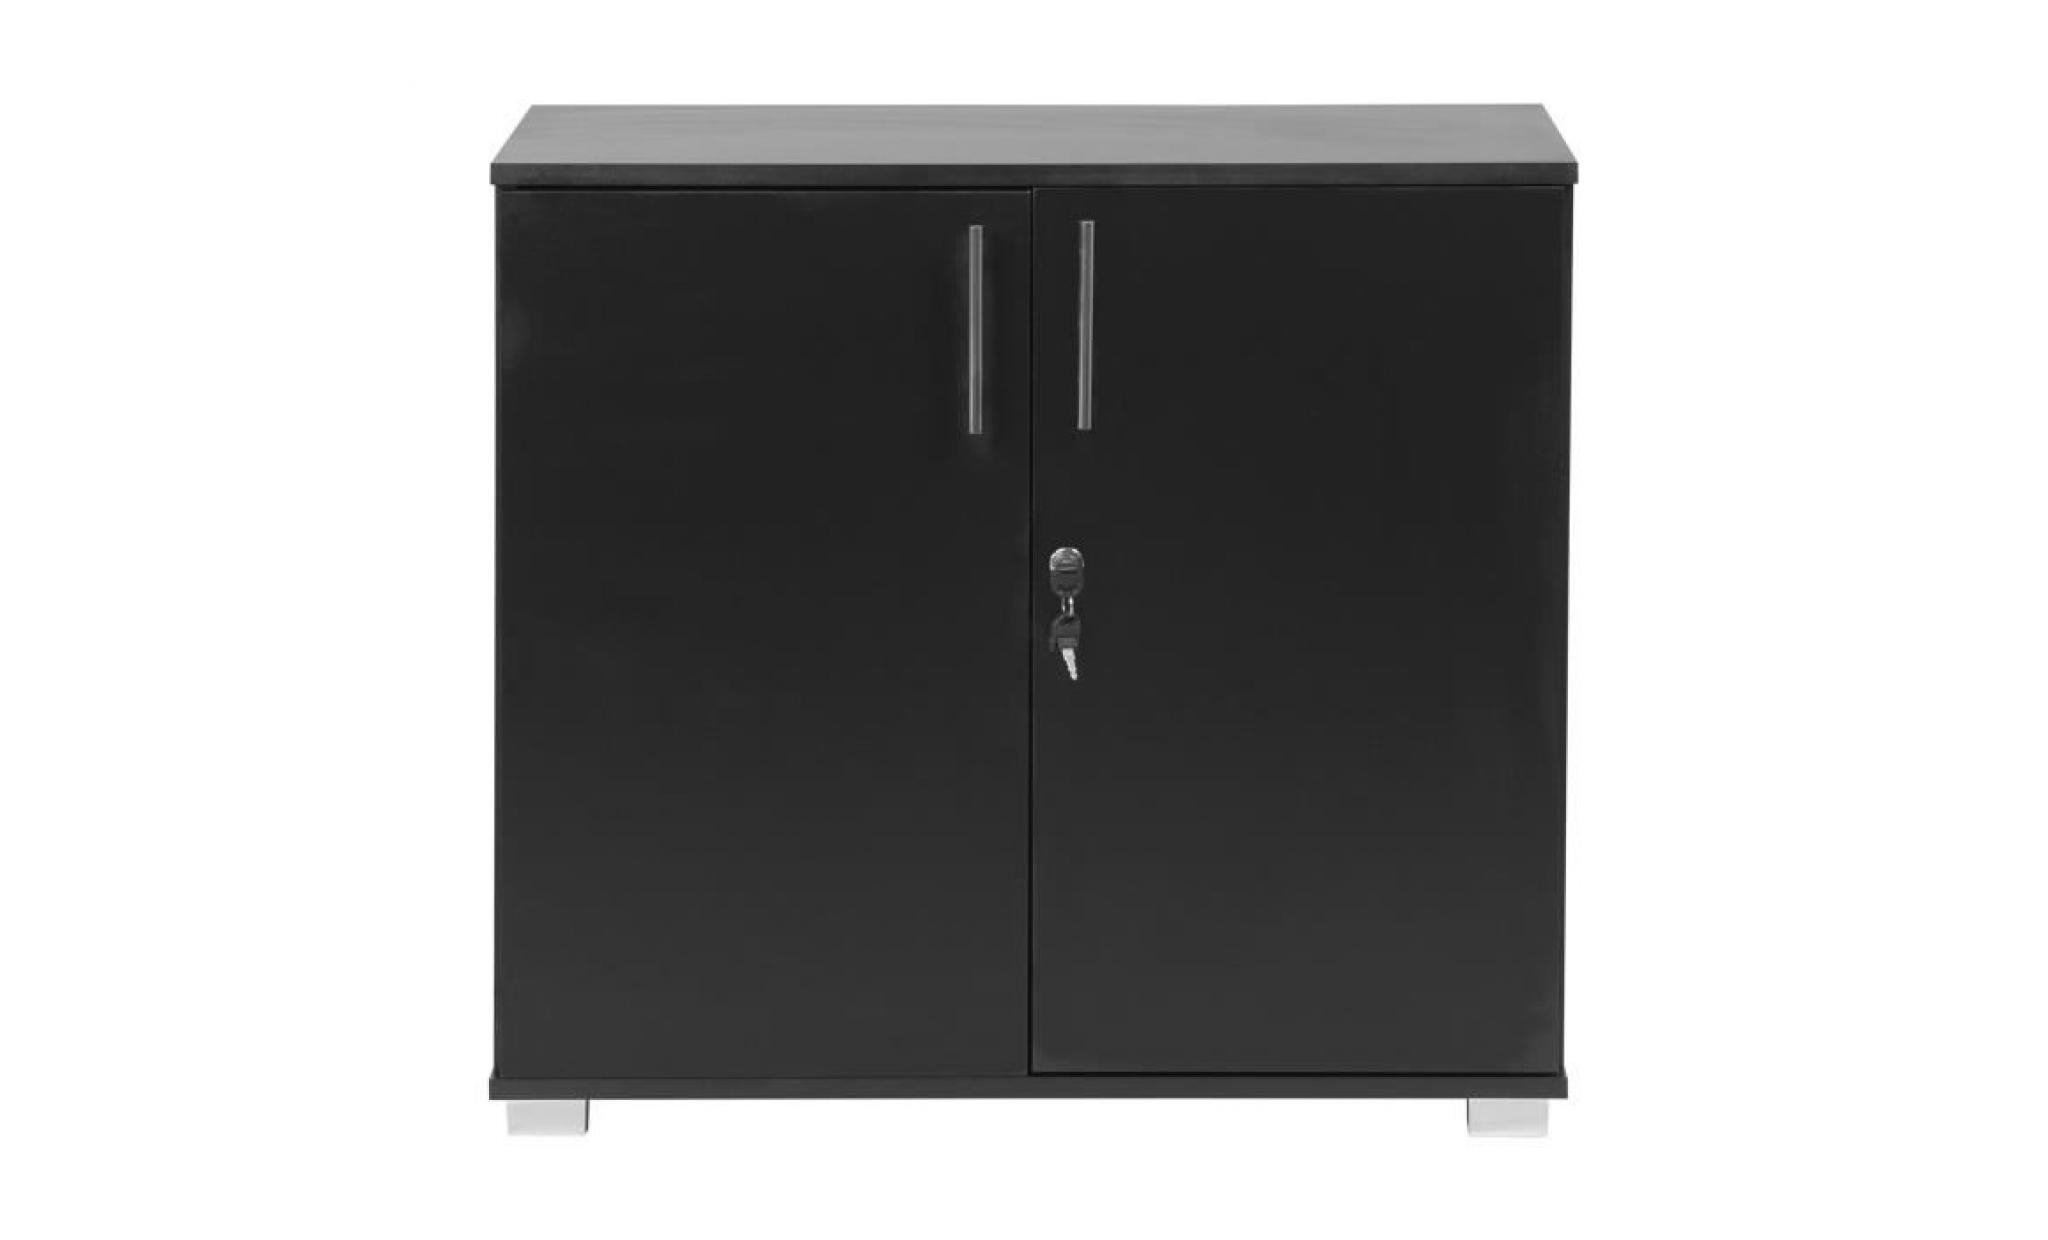 mmt sd iv07 black lockable desk extension unit filing storage cabinet pas cher